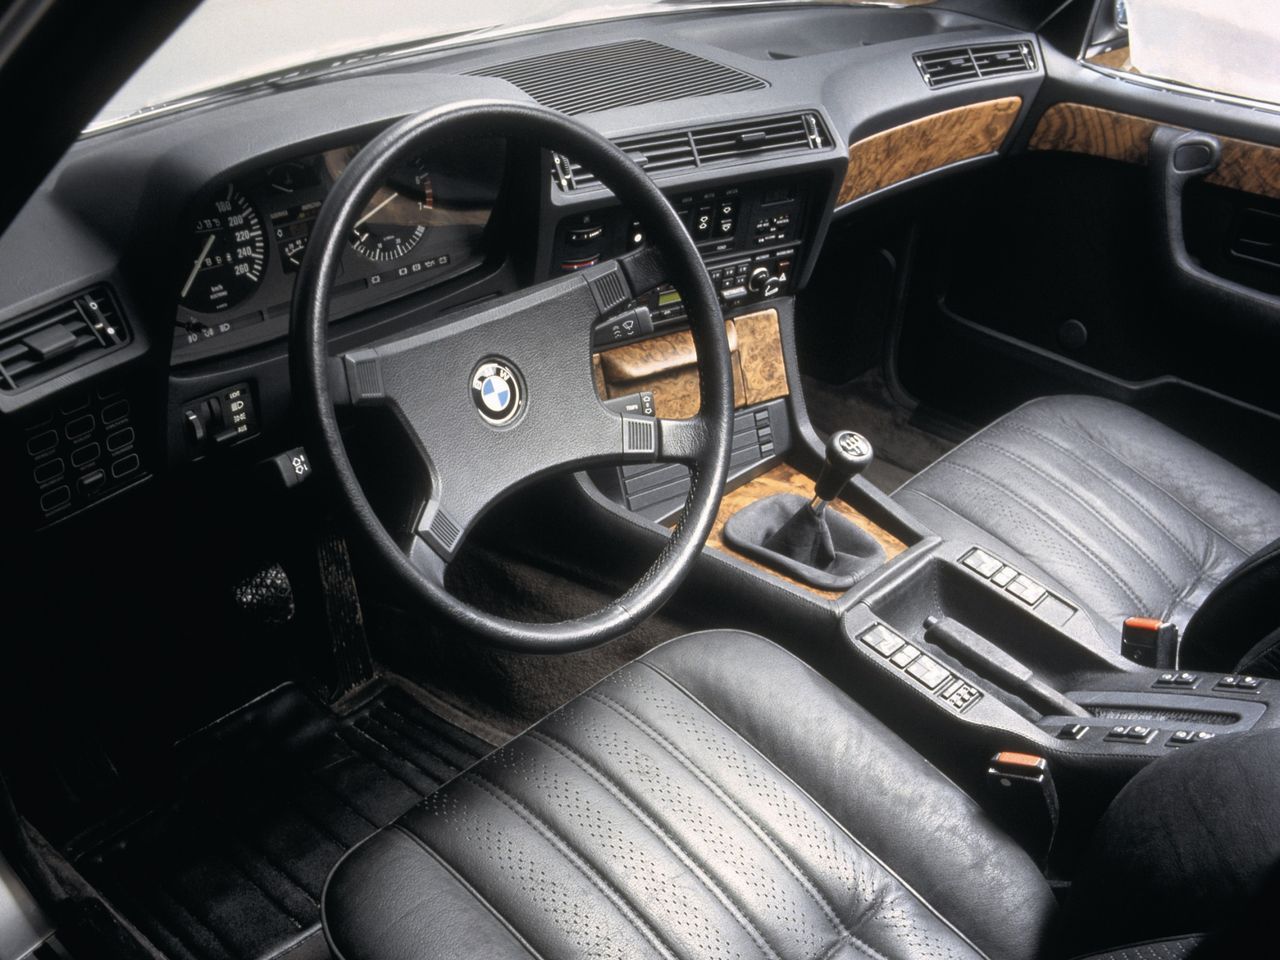 W 1984 roku BMW poprawiło silnik 745i. Jednostka o oznaczeniu M106 została wyposażona w komputer Motronic. Powiększono także jej pojemność skokową. Wzrosła ona do 3,4 l.